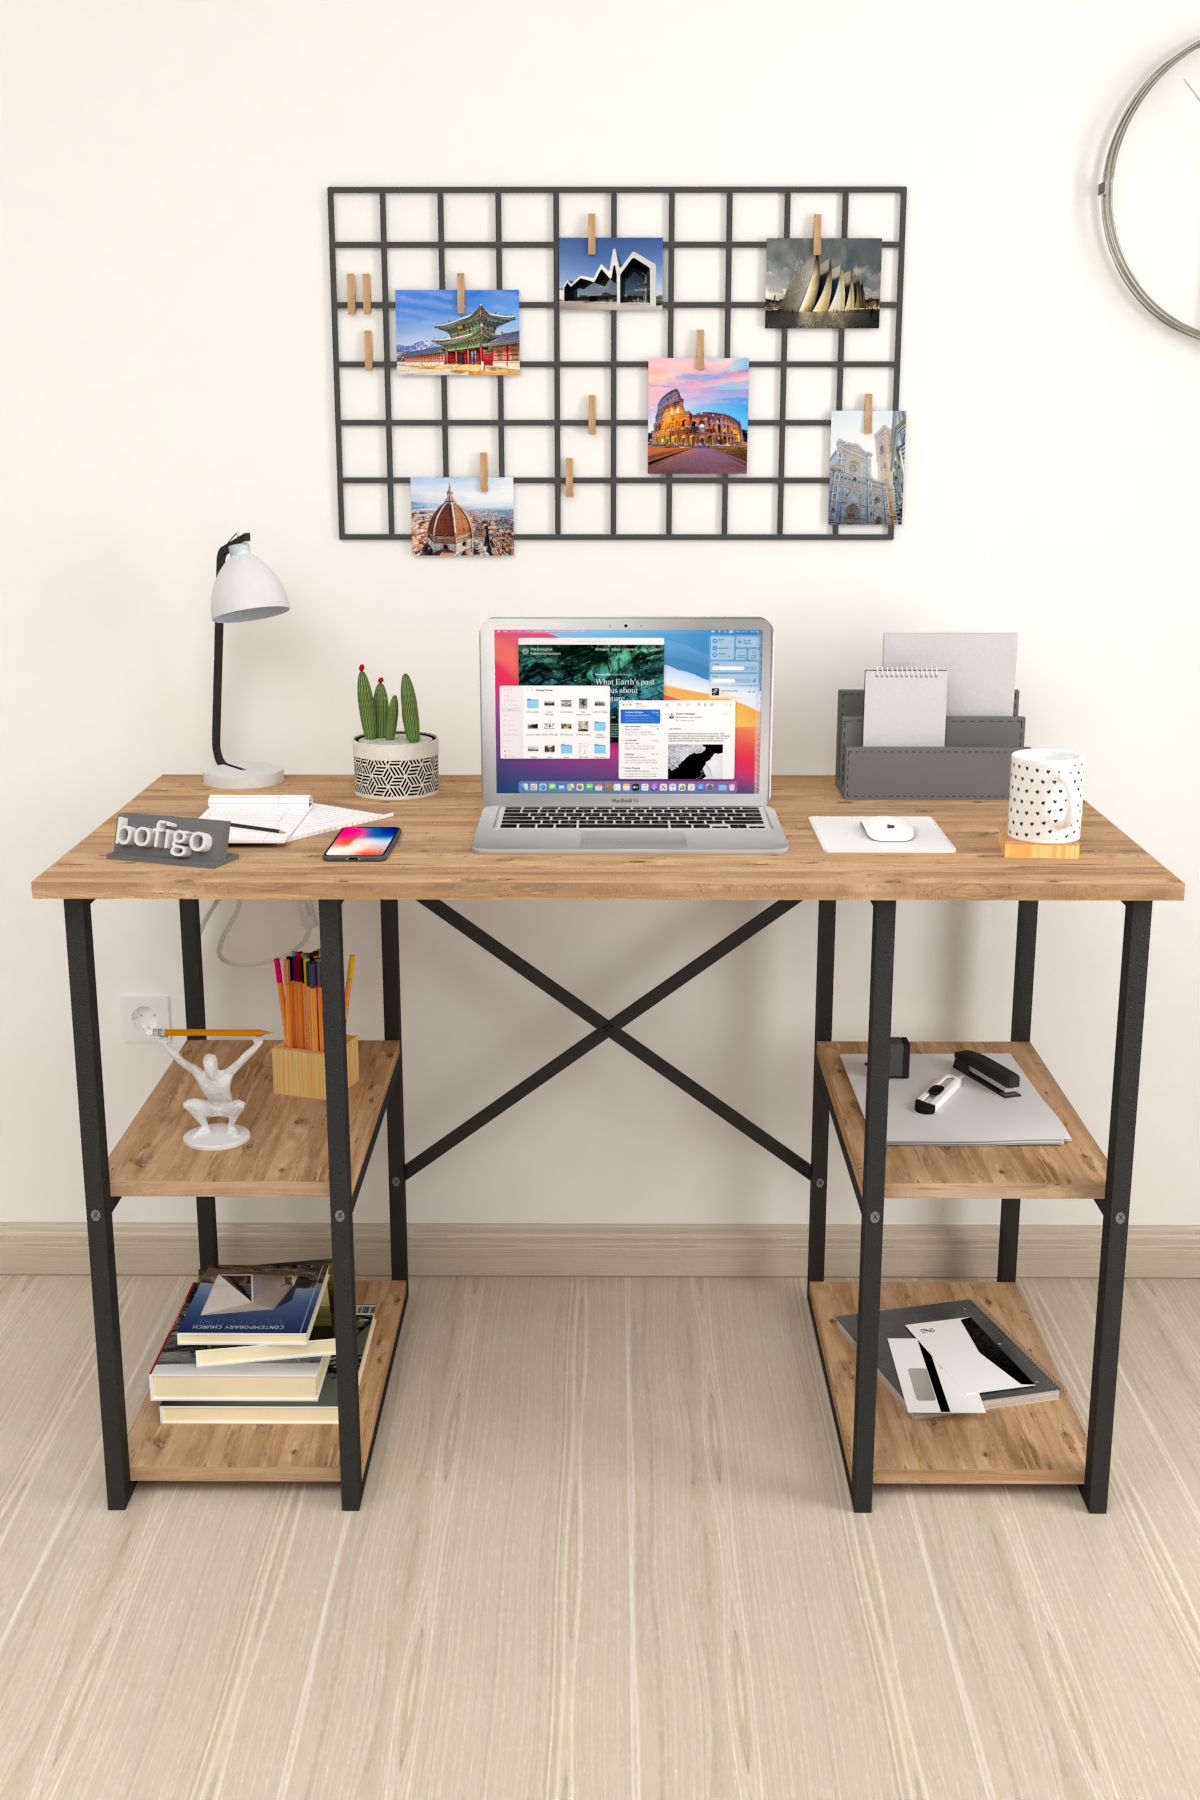 Bofigo 4 Shelf Study Desk 60x120 cm  Pine